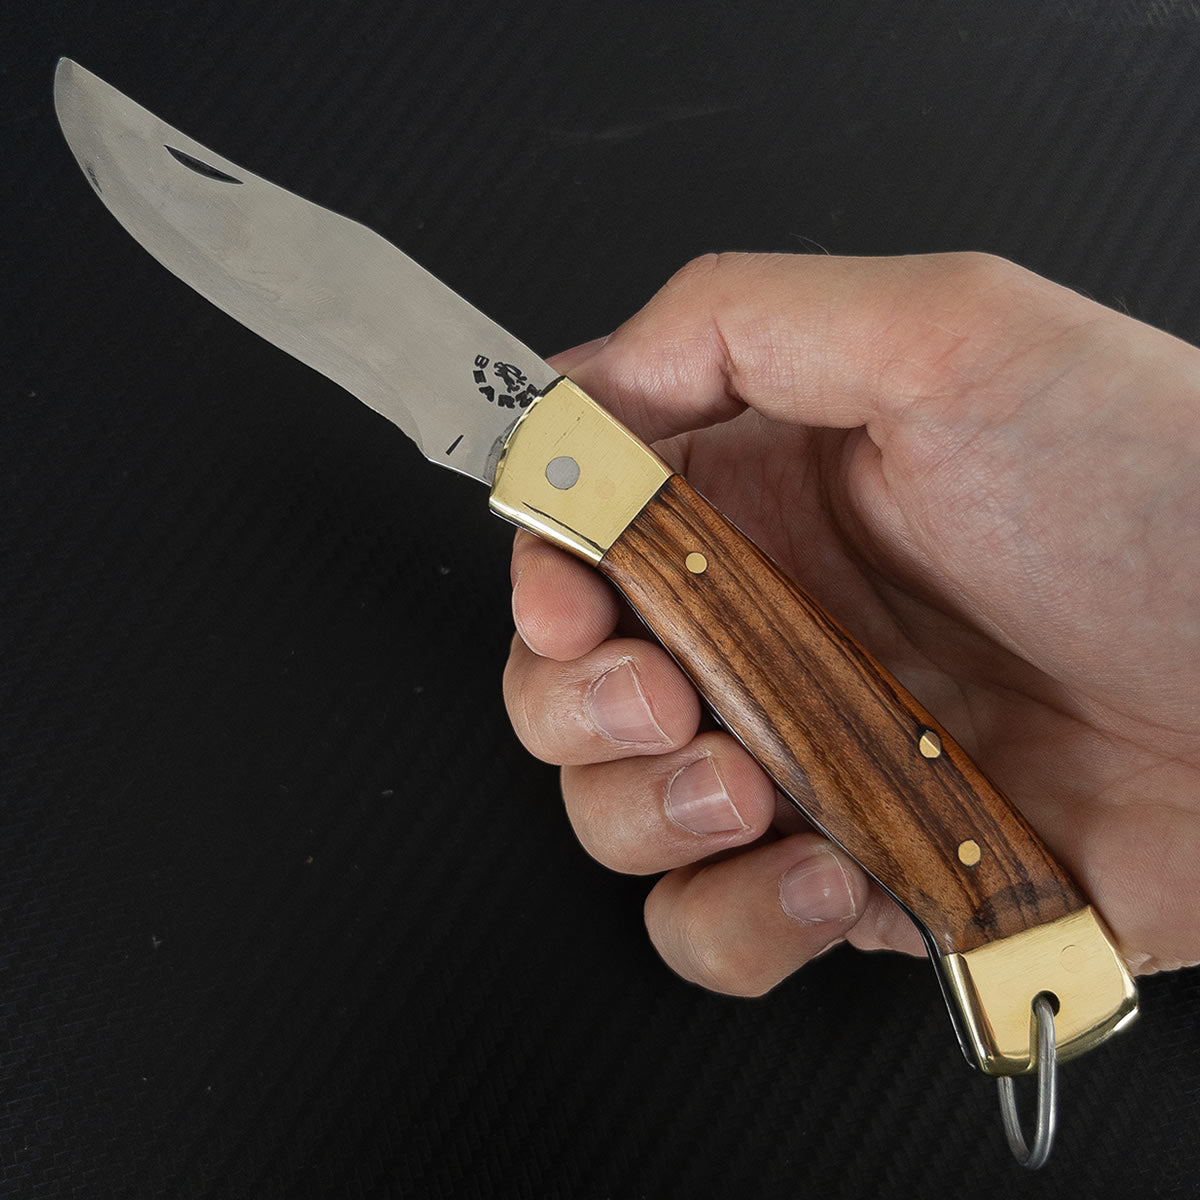 Furbem - Canivete modelo HR clássico. Cabo em madeira e lâmina forjada em aço inox